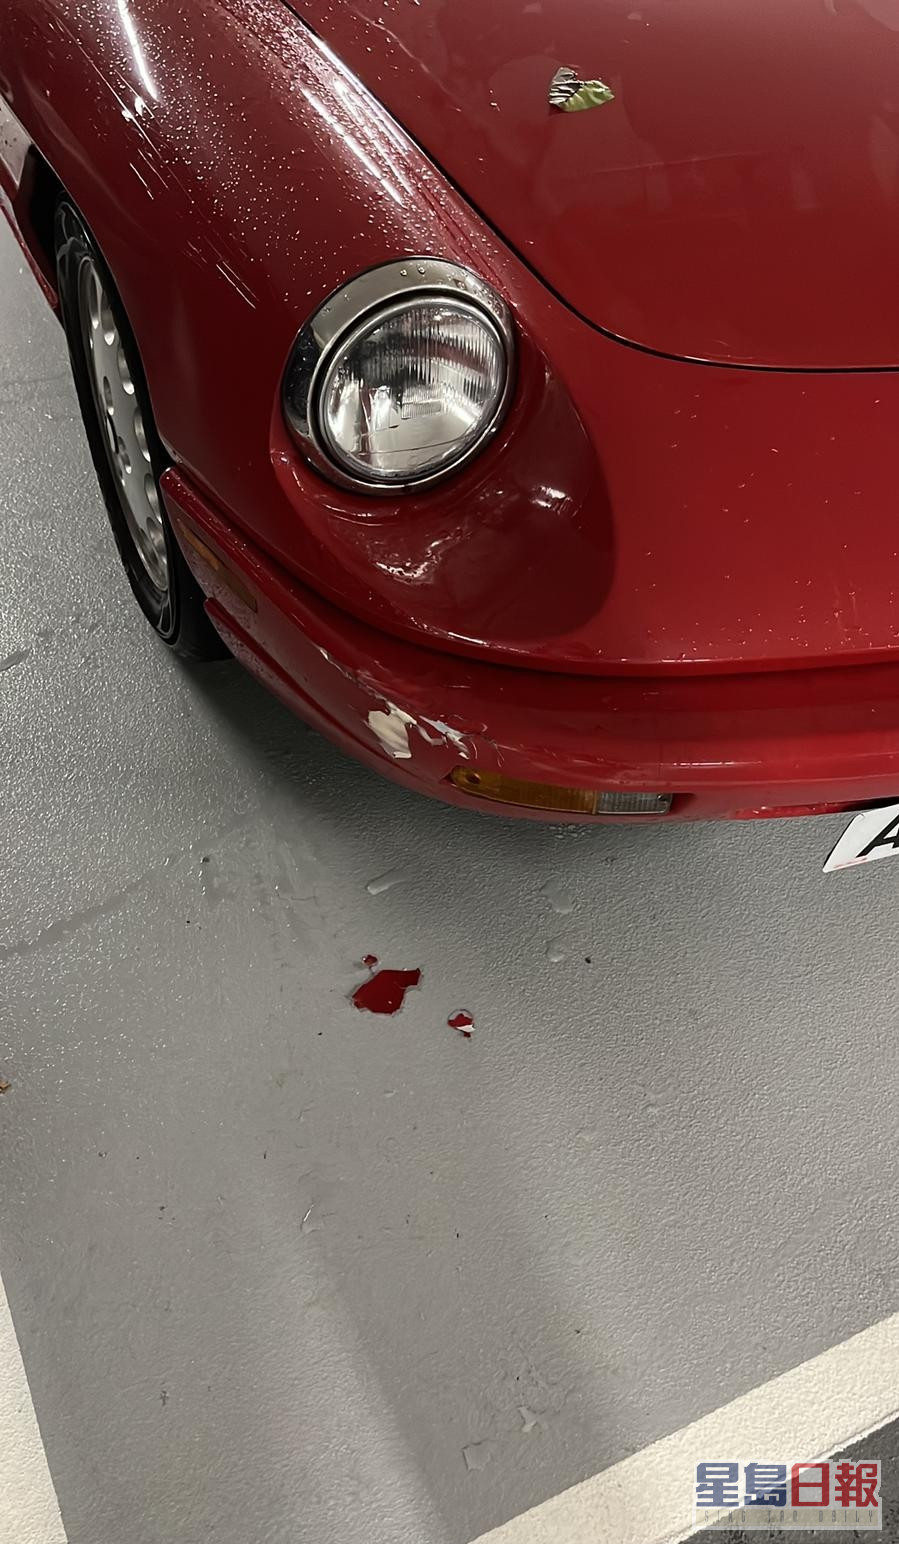 林作驾驶的红色跑车车头损毁。